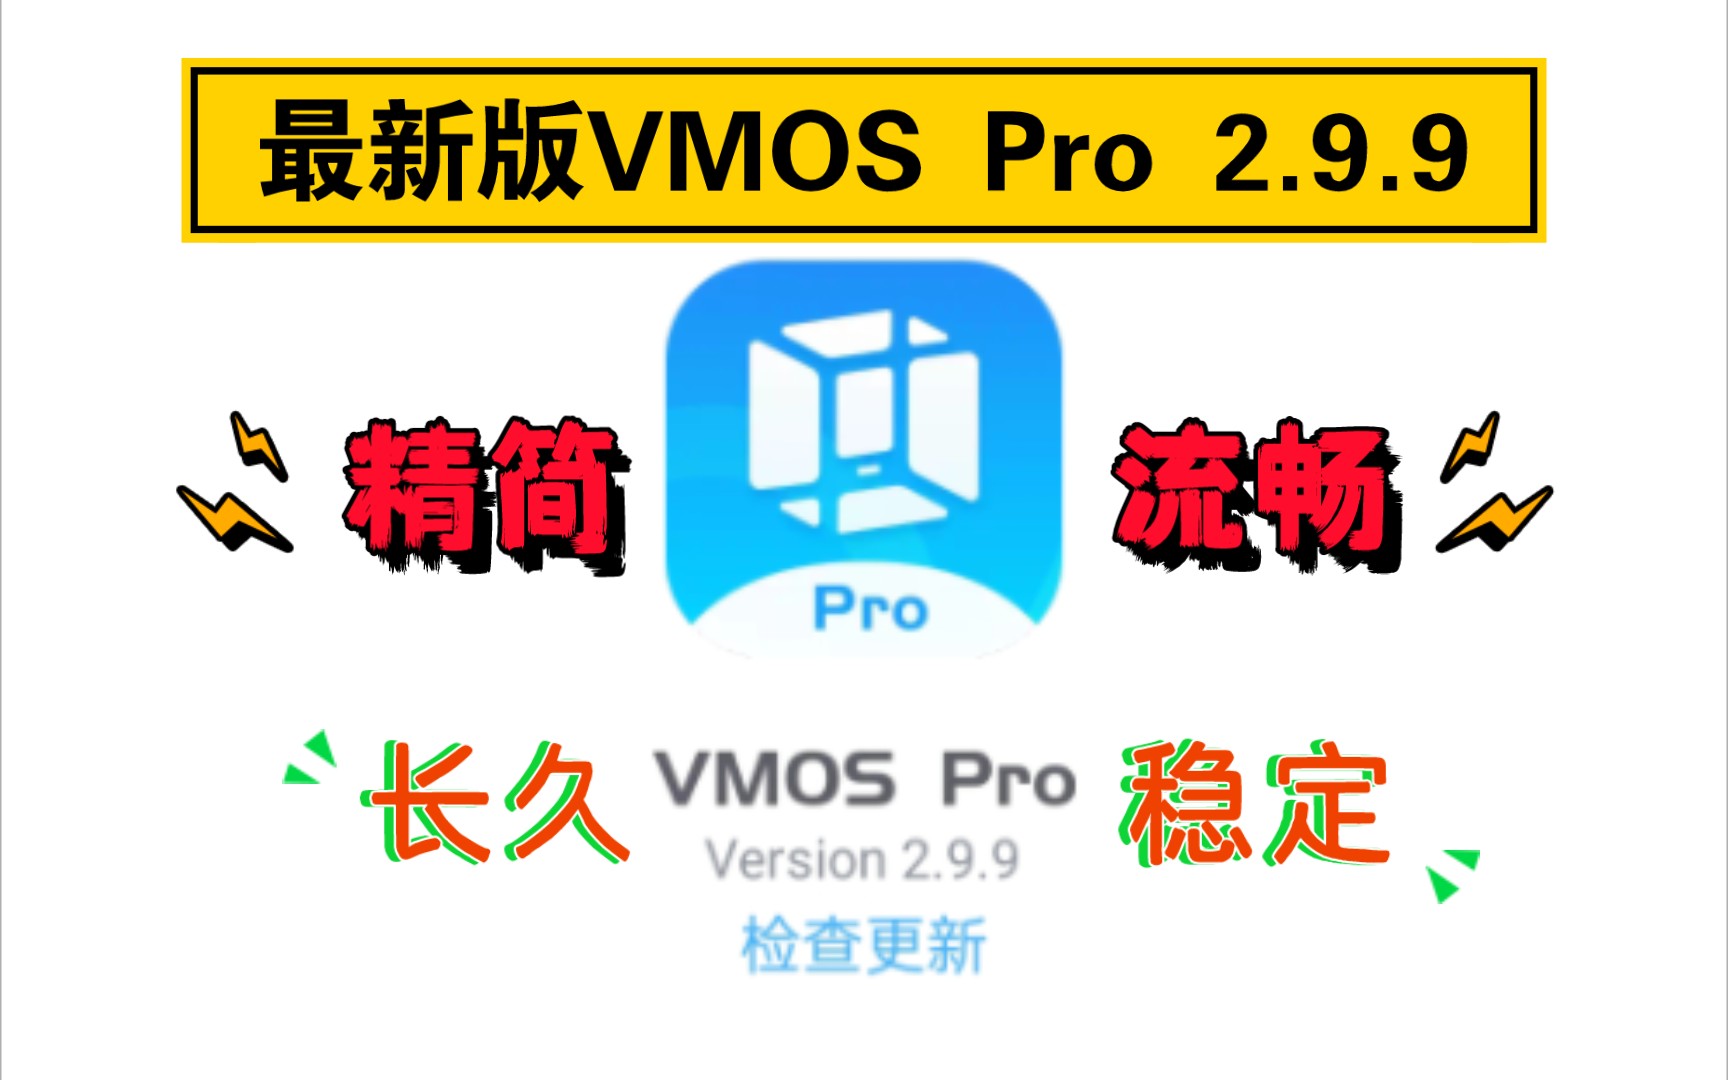 最新版VMOS Pro虚拟机，2.9.9长久版，新增对安卓14的支持。评论区免费获取下载链接